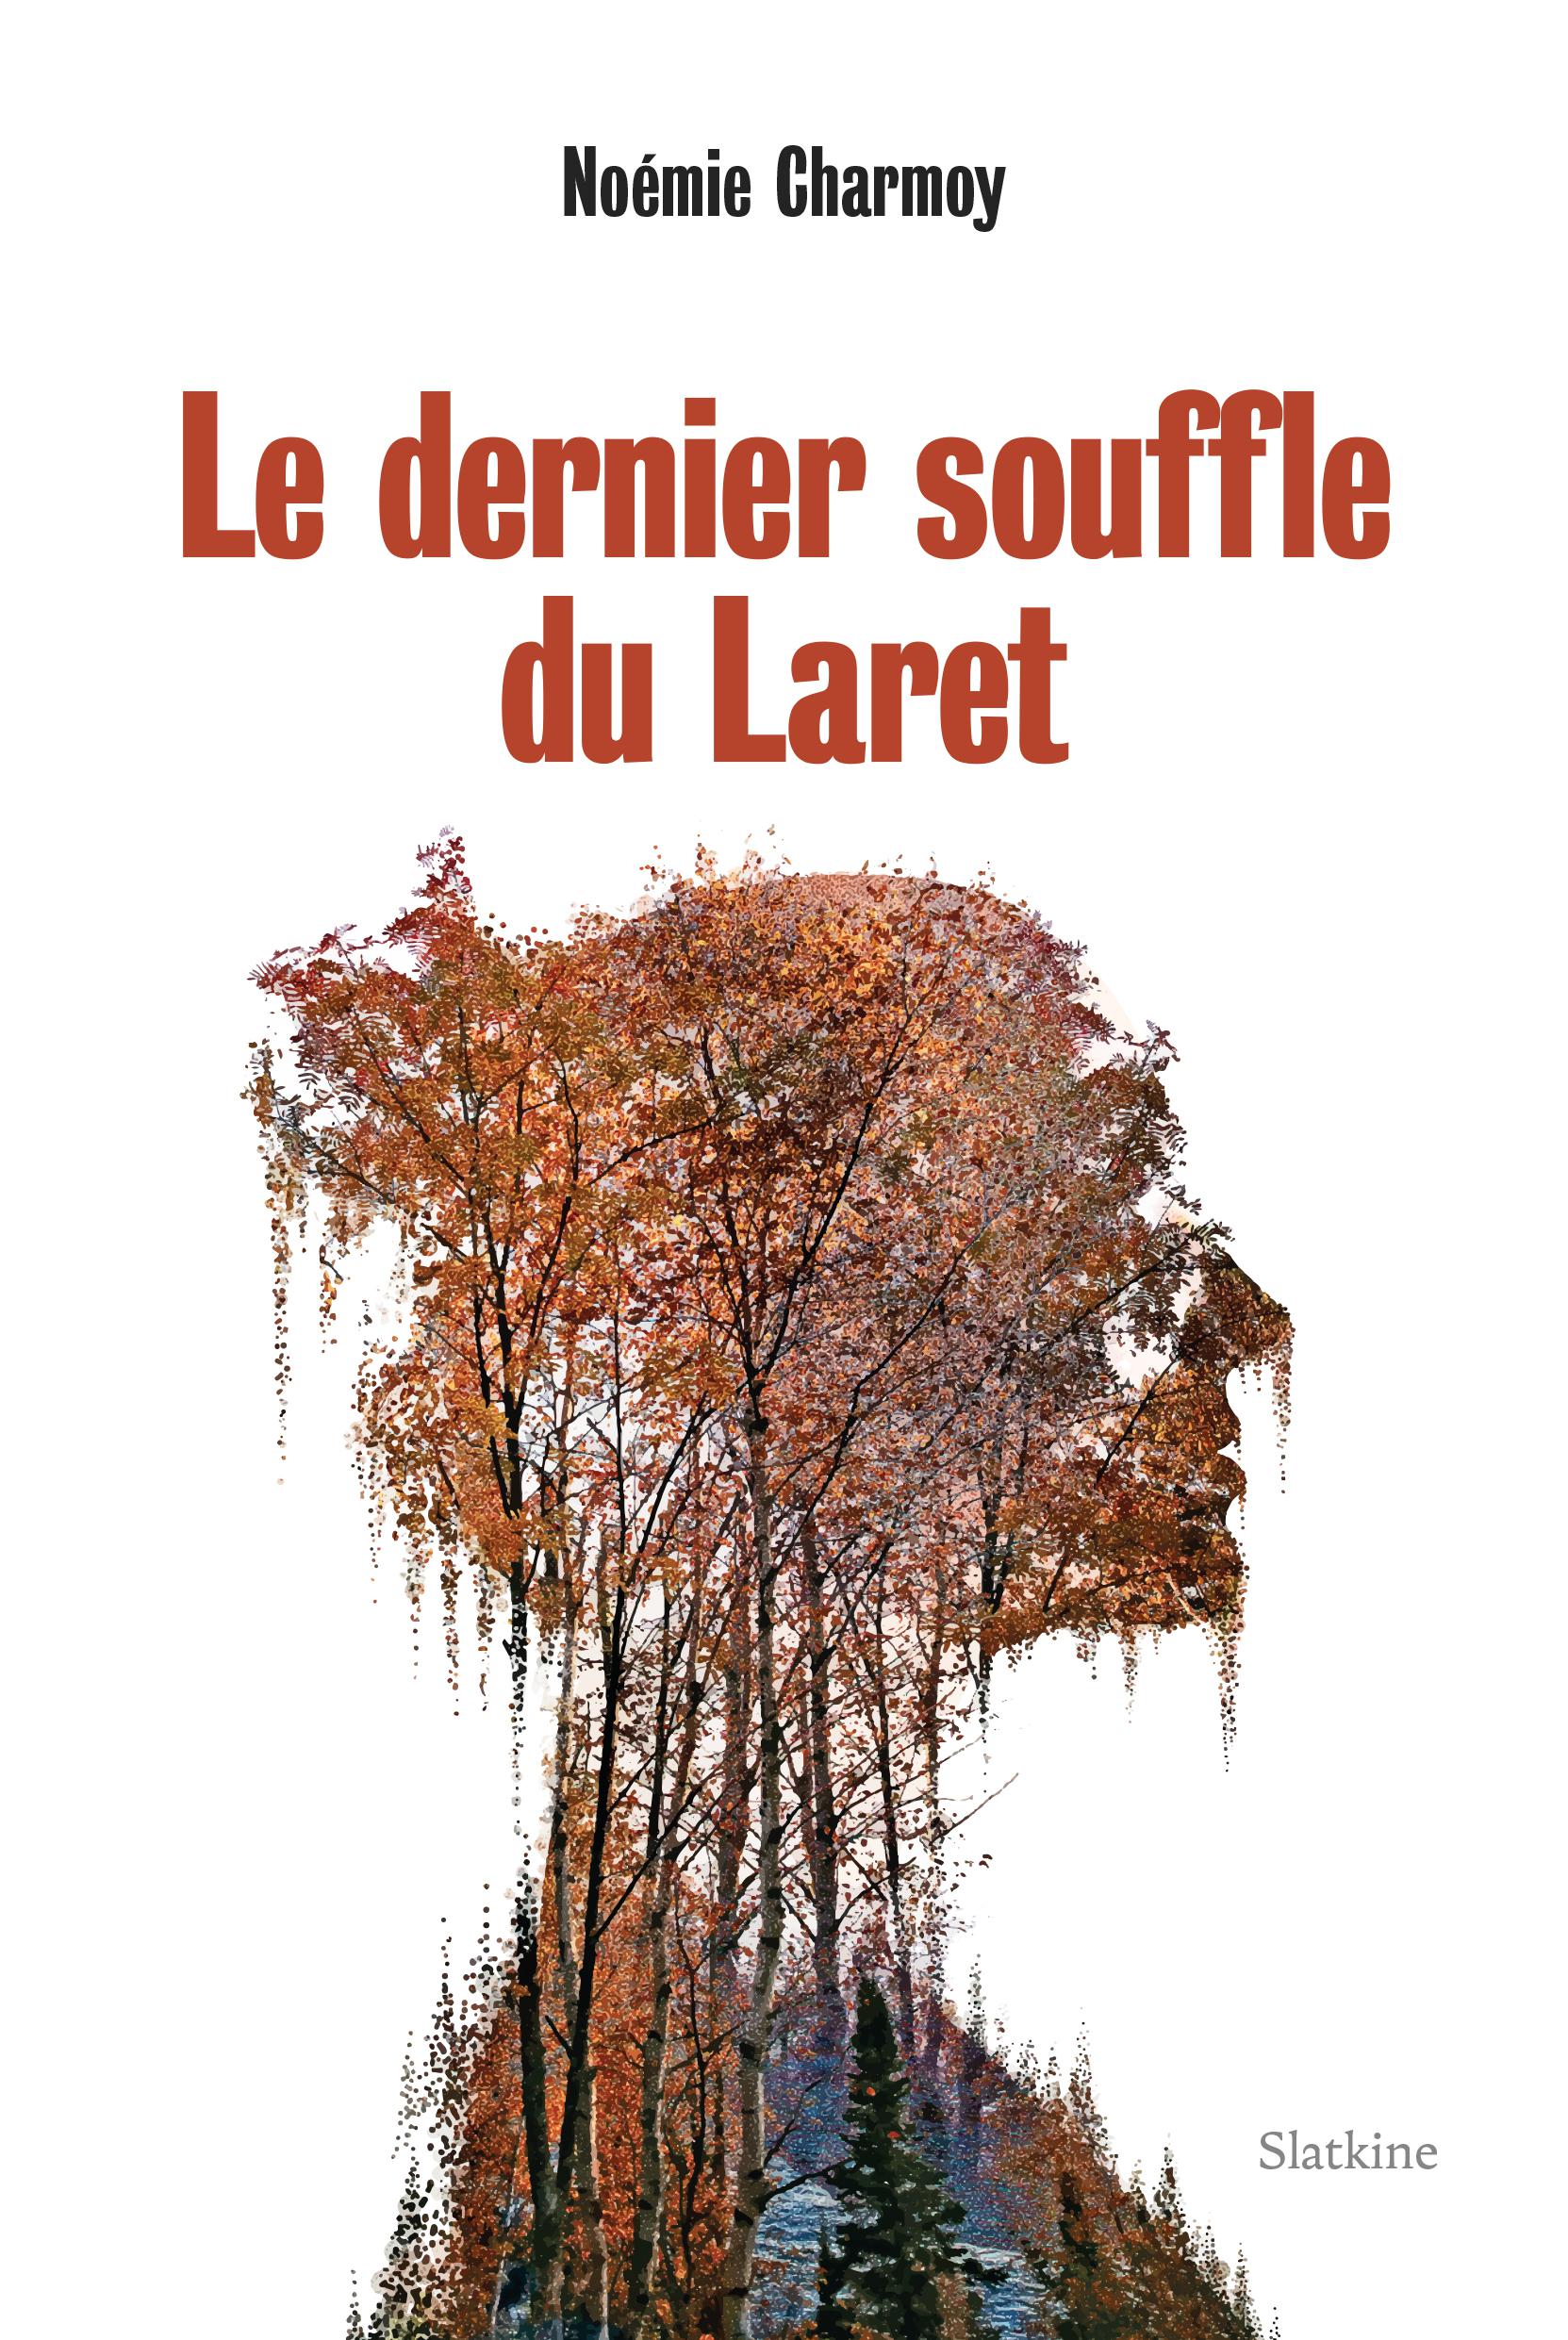 Couverture du roman "Le dernier souffle du Laret" de Noémie Charmoy [Editions Slatkine]